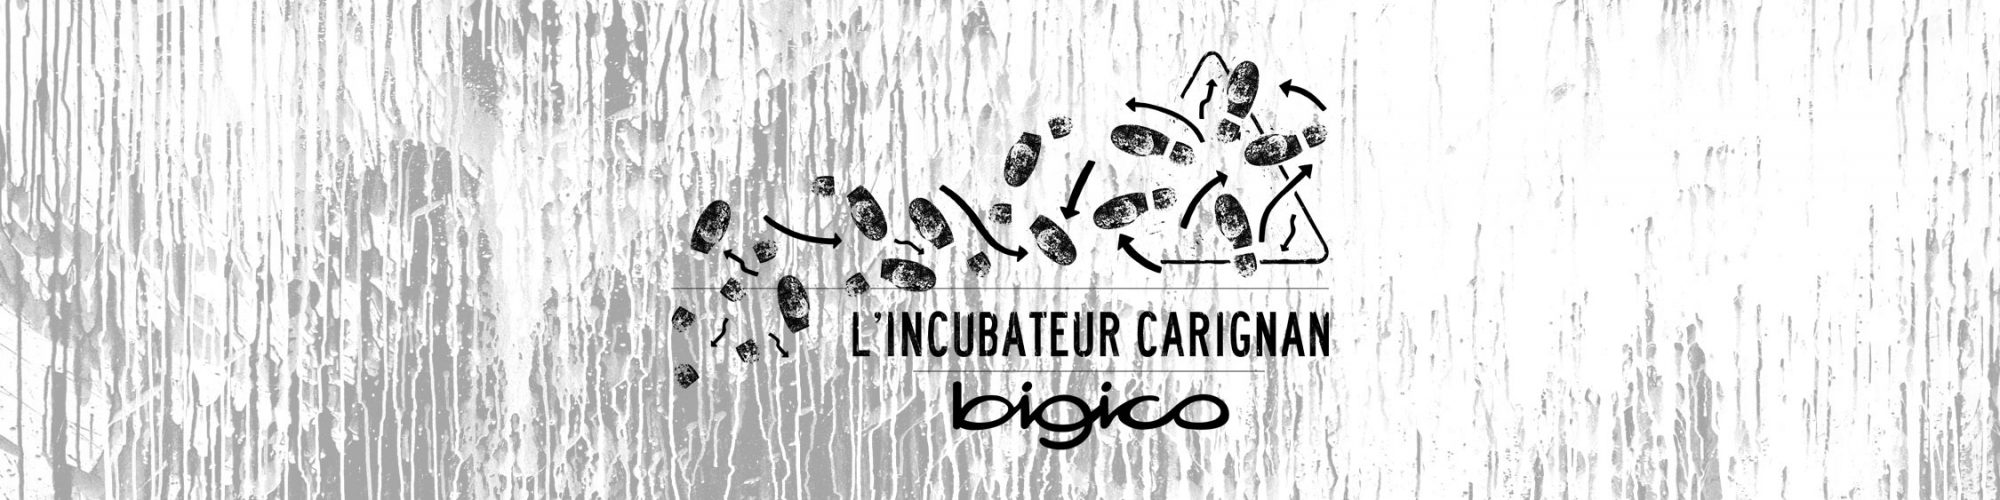 slide-incubateur-carignan